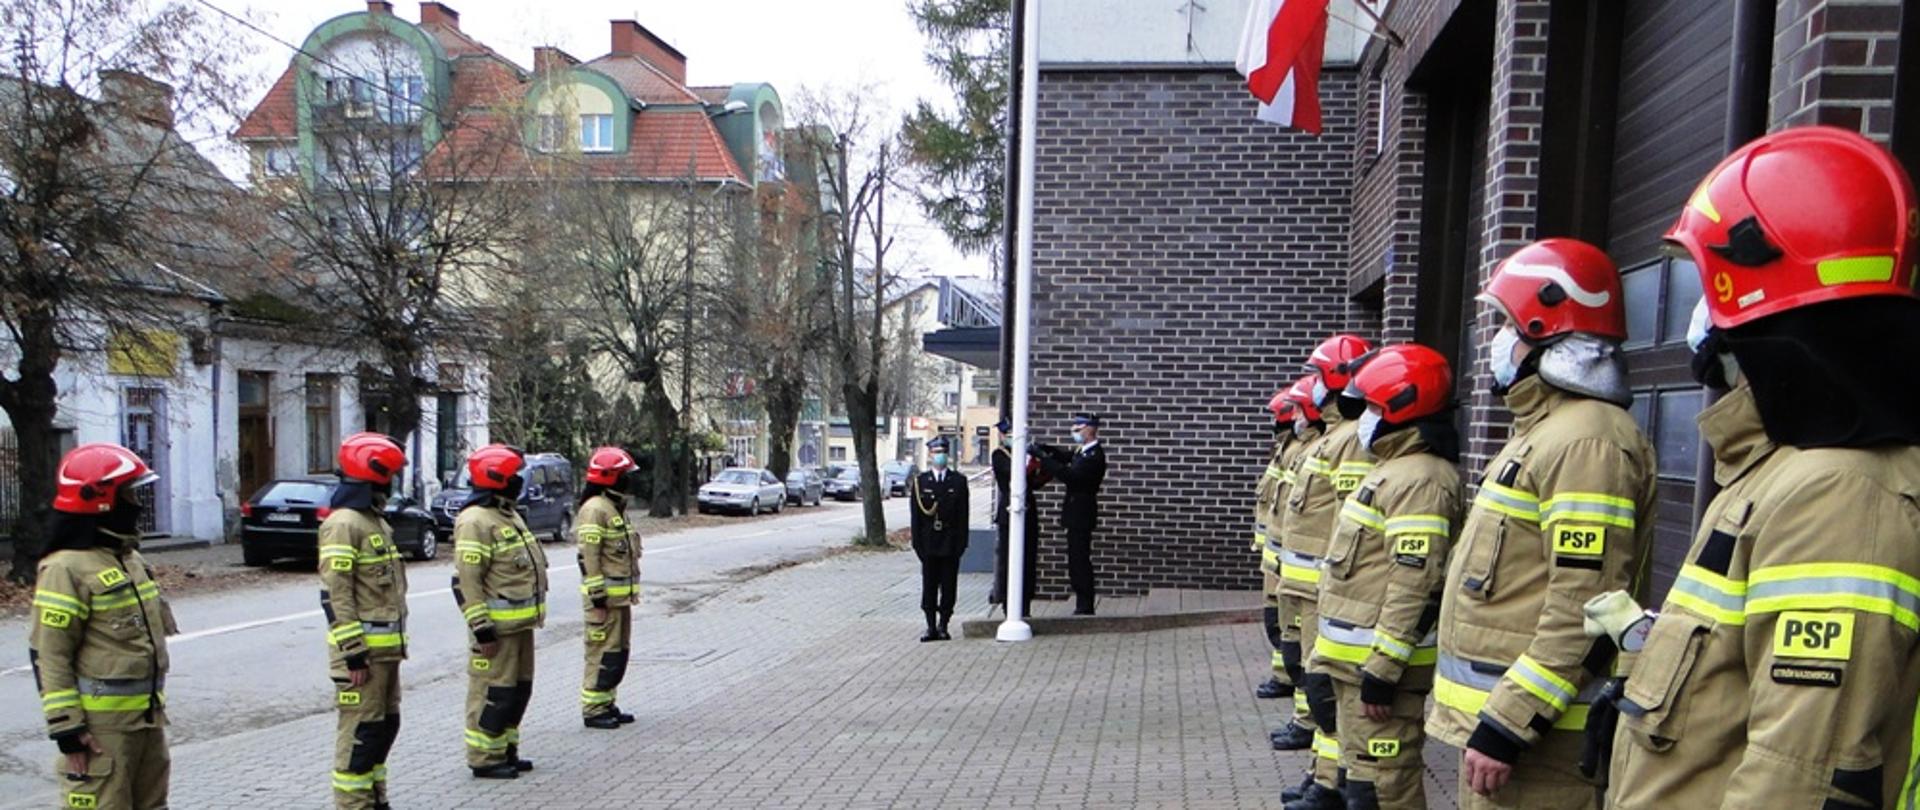 Obchody Narodowego Święta Niepodległości. Strażacy stojący na zbiórce na tle masztu flagowego.